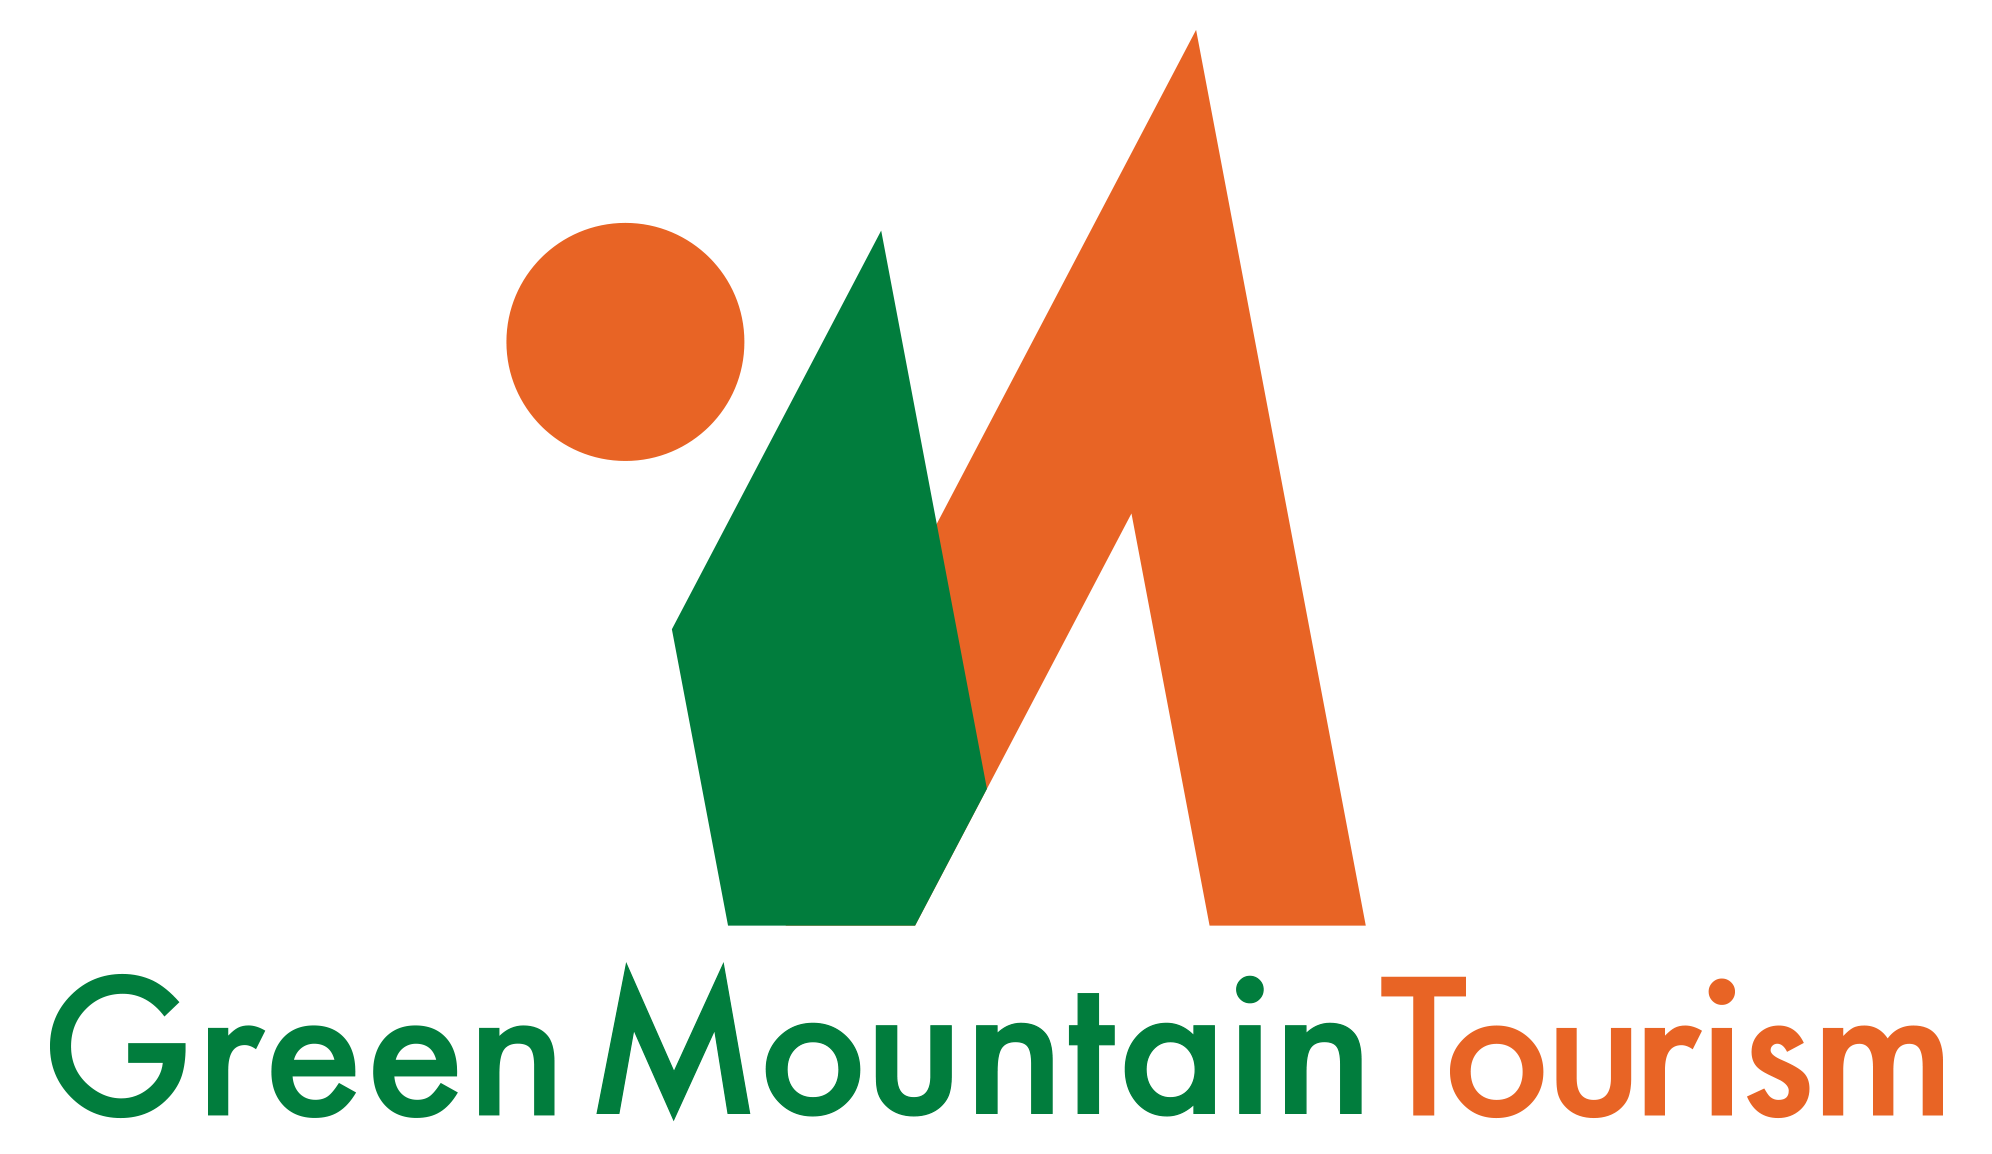 Green Mountain Tourism